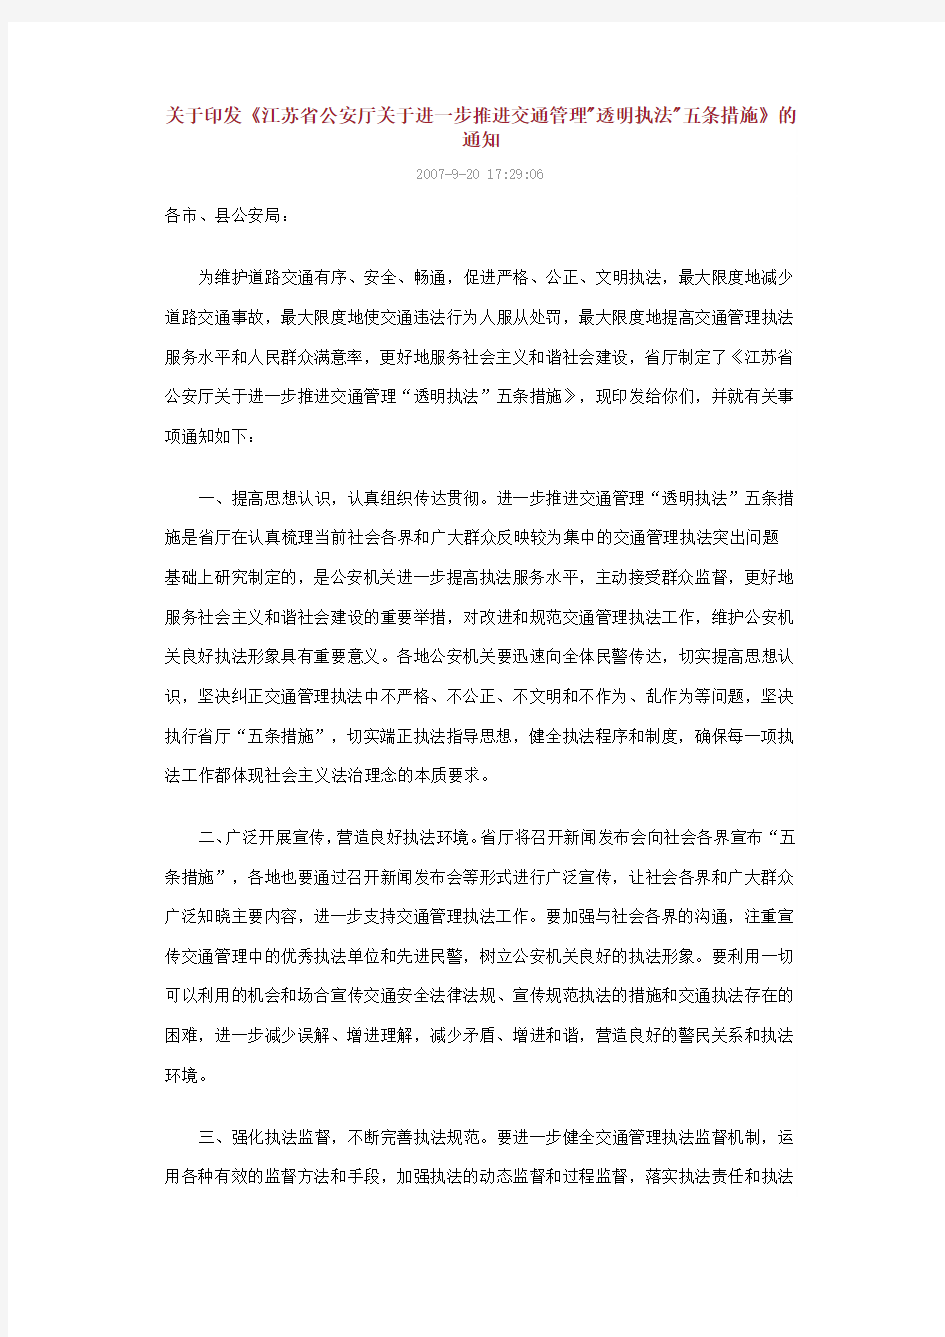 关于印发《江苏省公安厅关于进一步推进交通管理透明执法五条措施》的通知